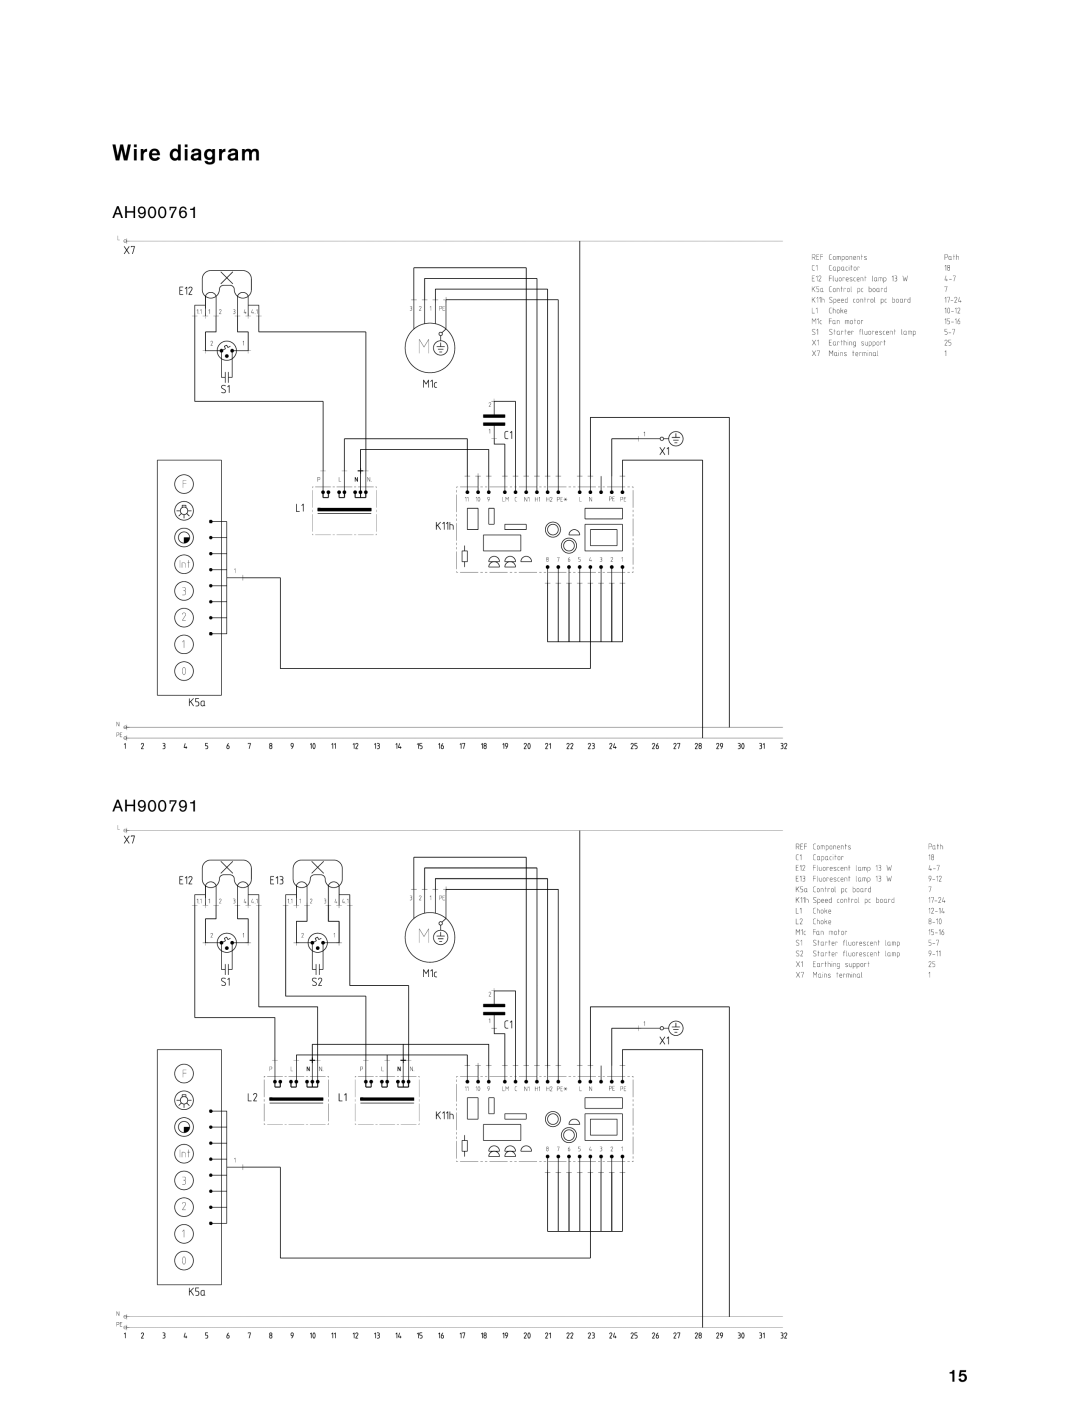 Gaggenau installation instructions Wire diagram, AH900761, AH900791 